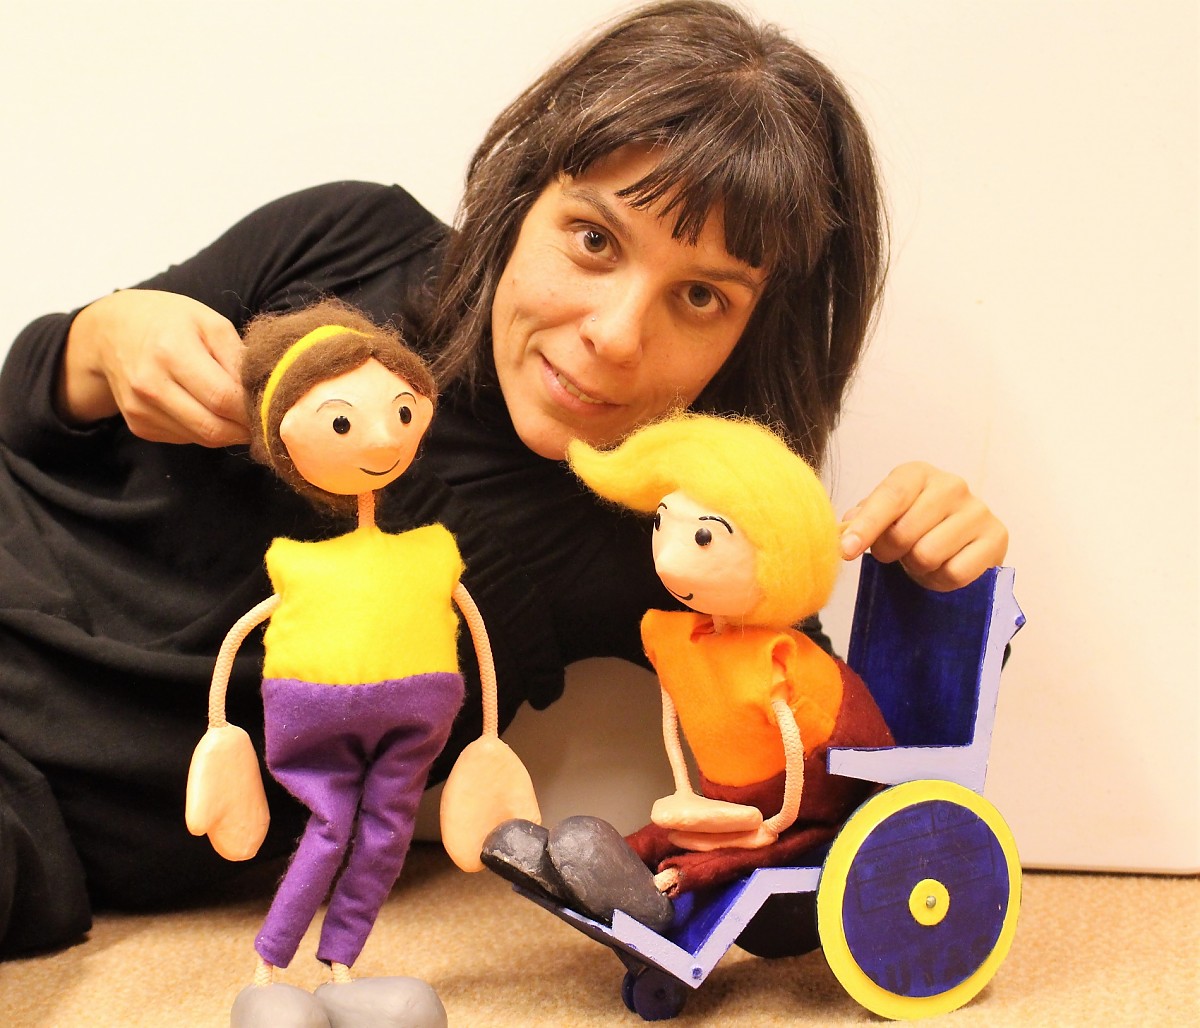 Associação Salvador apresenta Teatro de Marionetas inclusivo